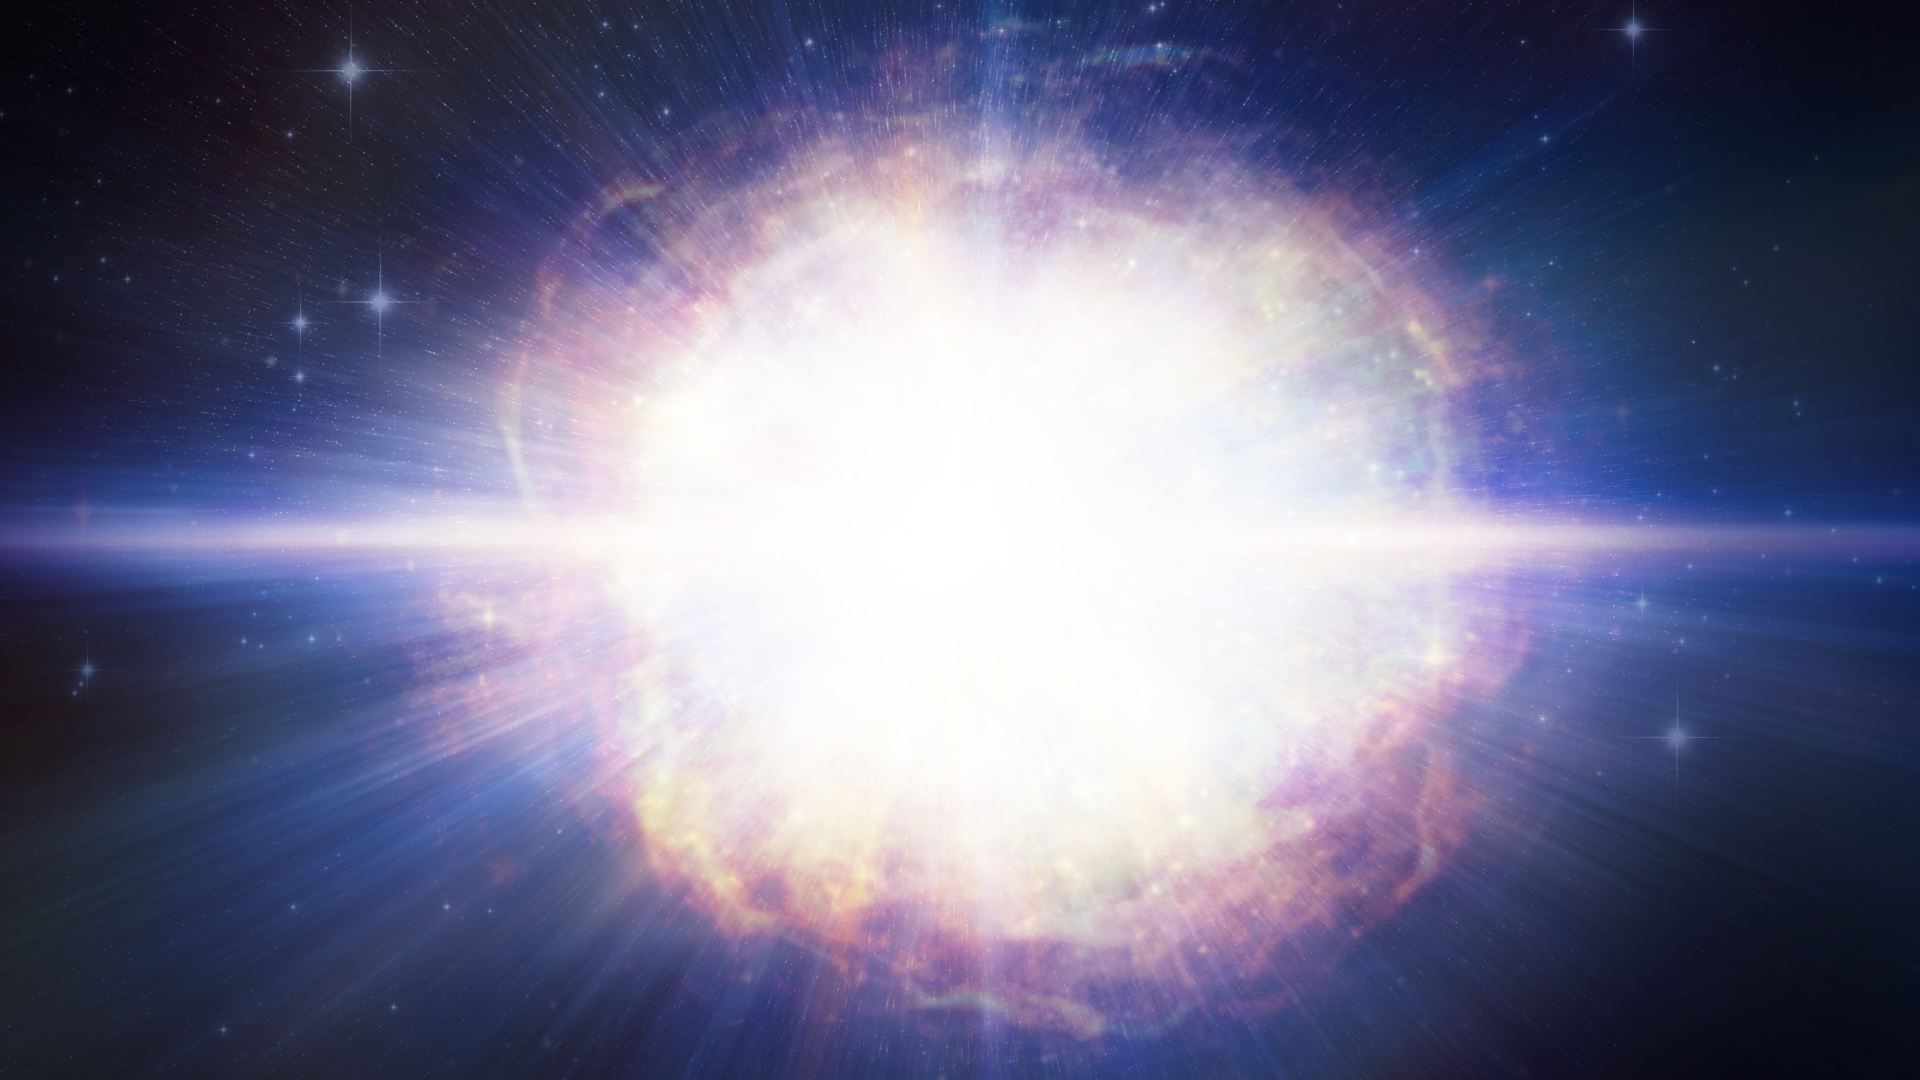 Nasa : l'incroyable image d'une étoile sur le point d'exploser